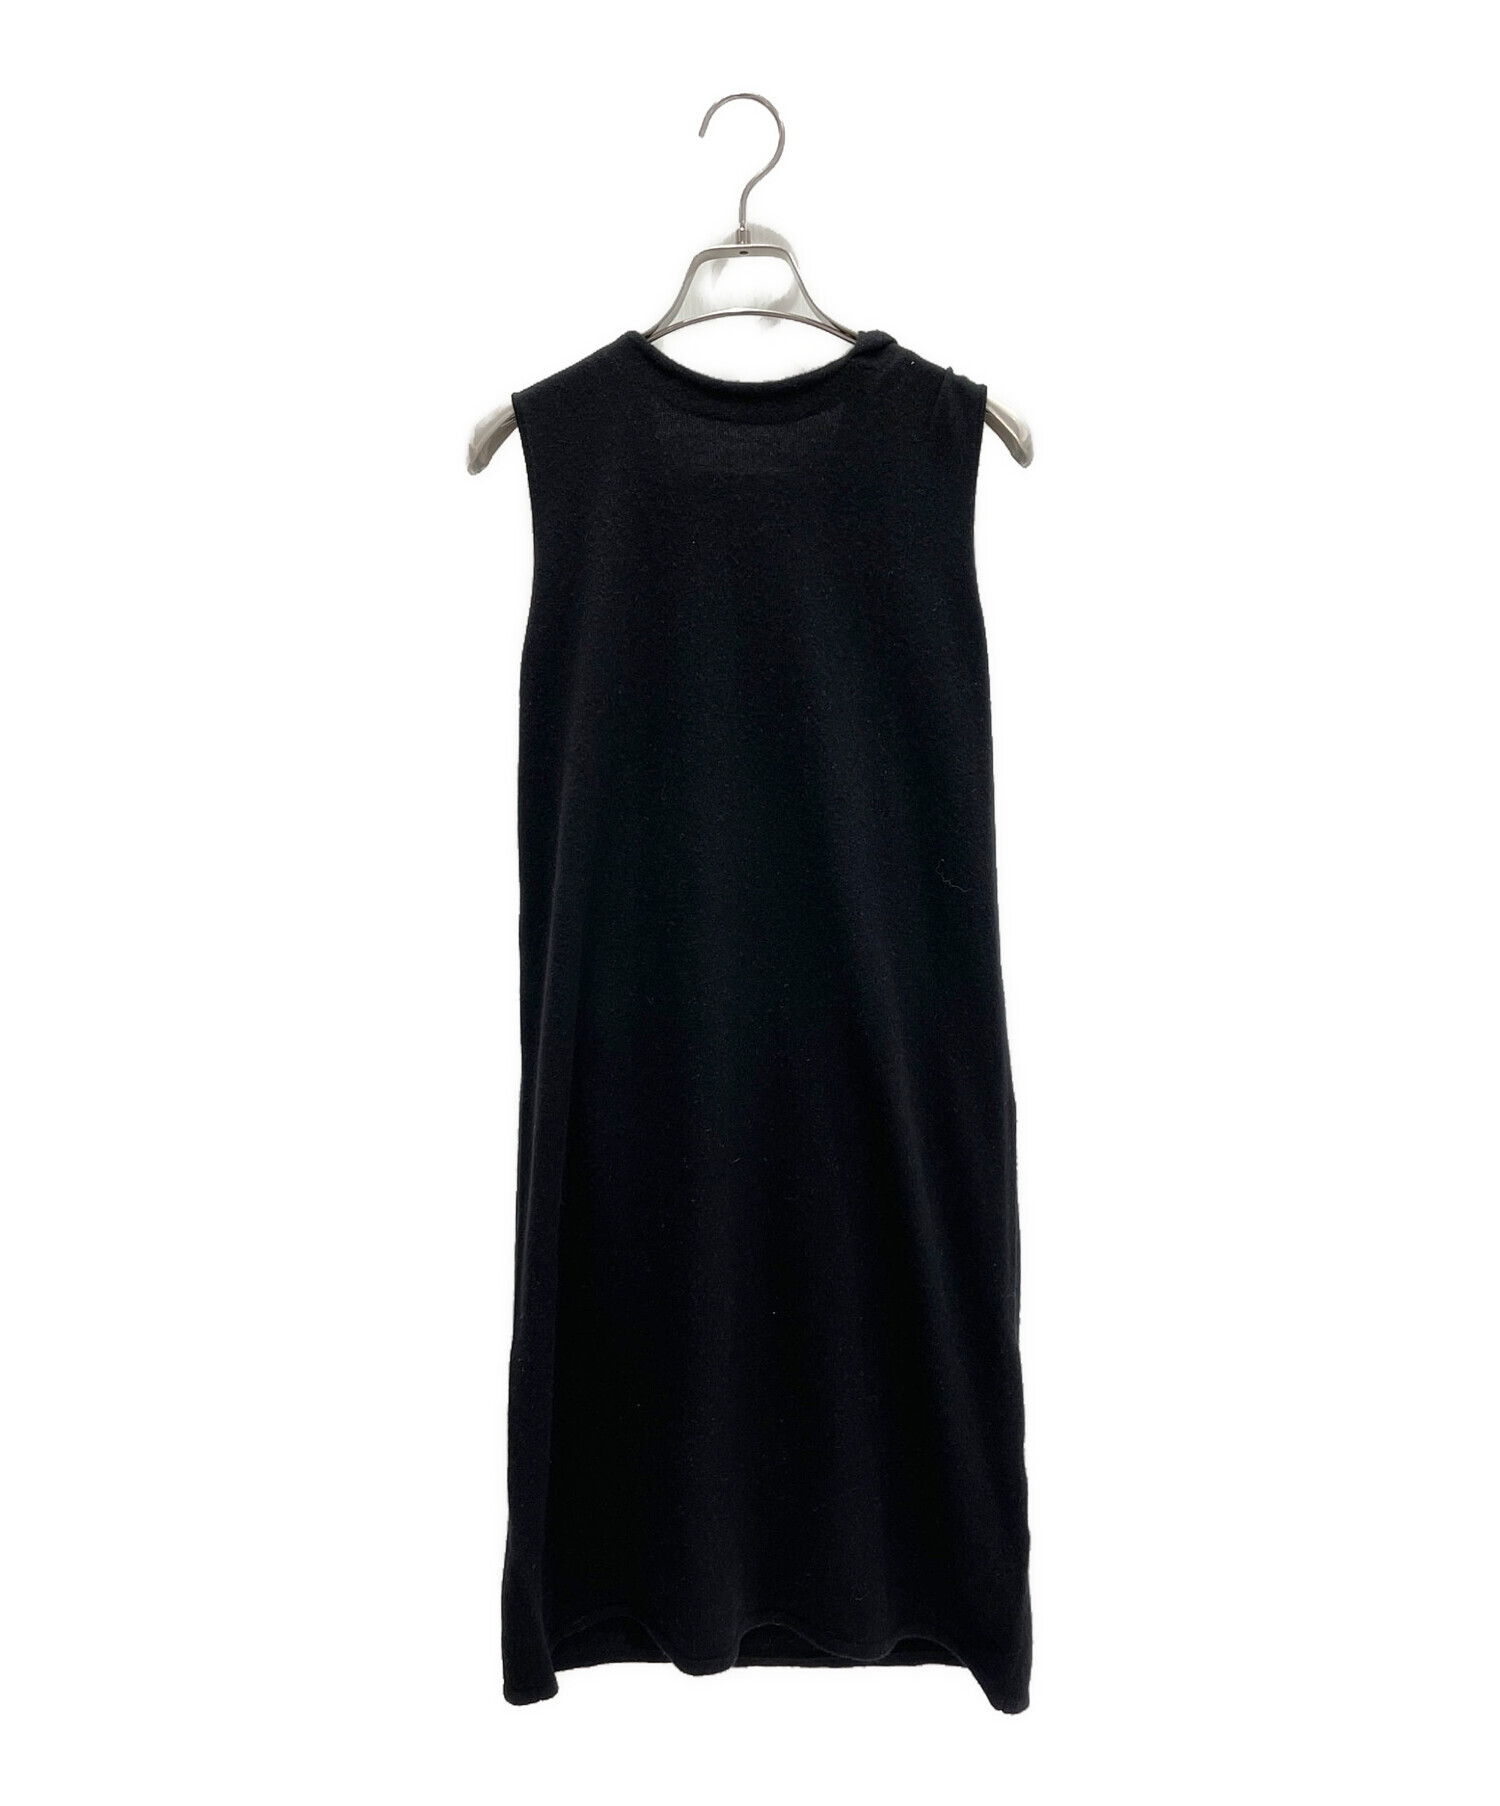 MYLAN (マイラン) ケープニットドレス ブラック サイズ:FREE 未使用品